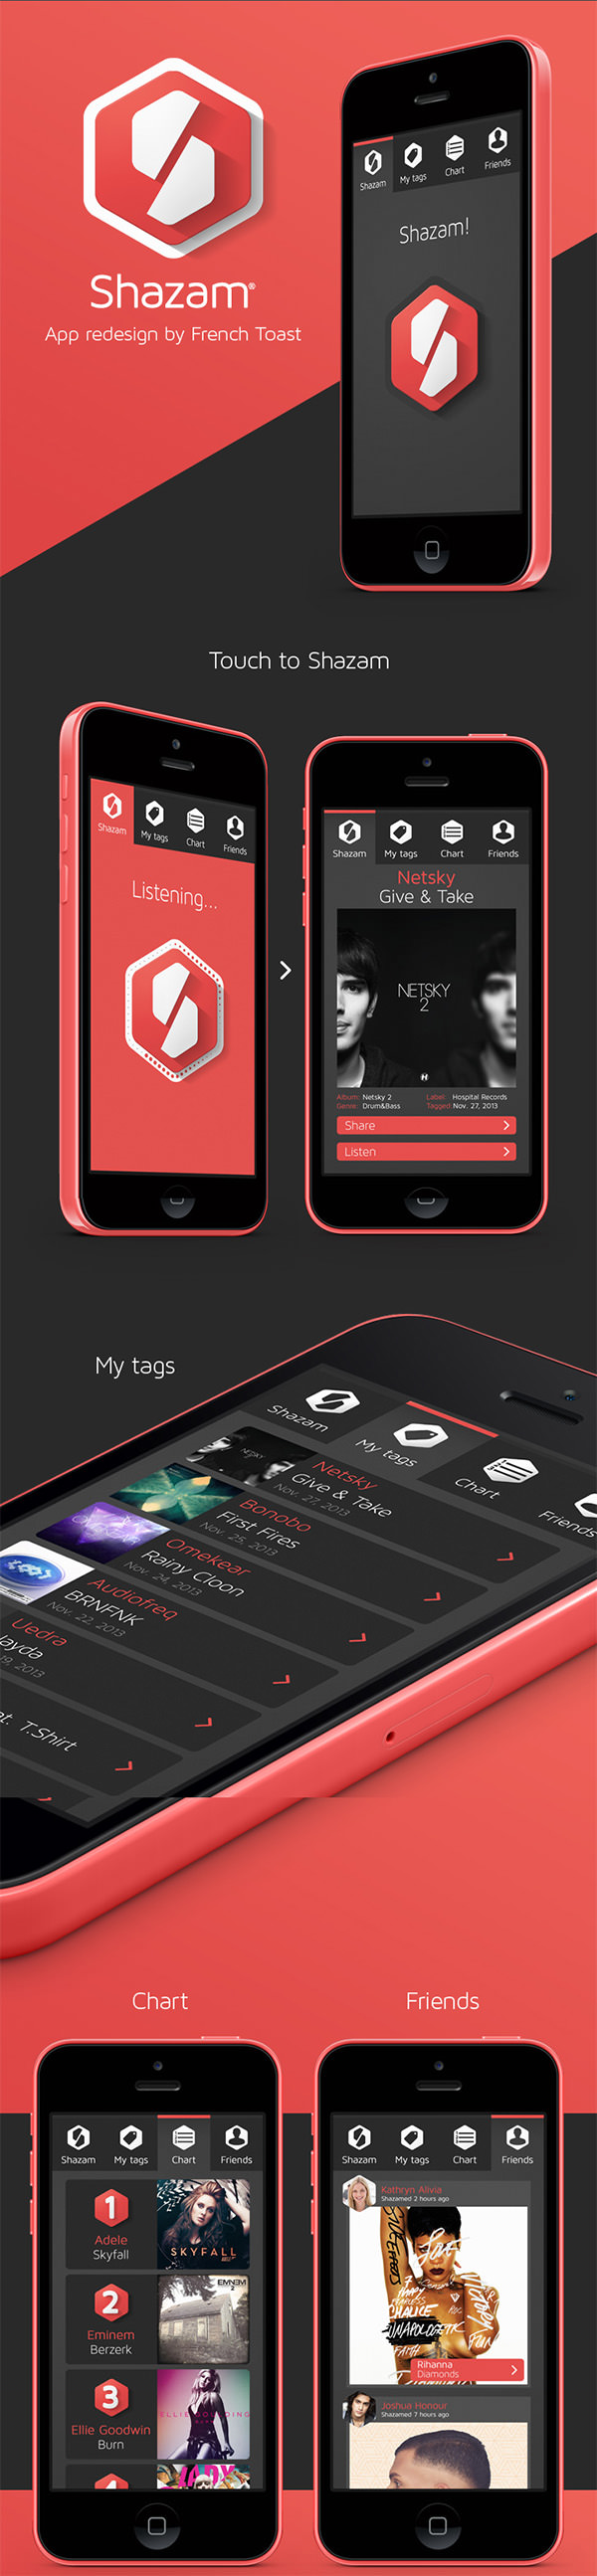 shazam app design concept